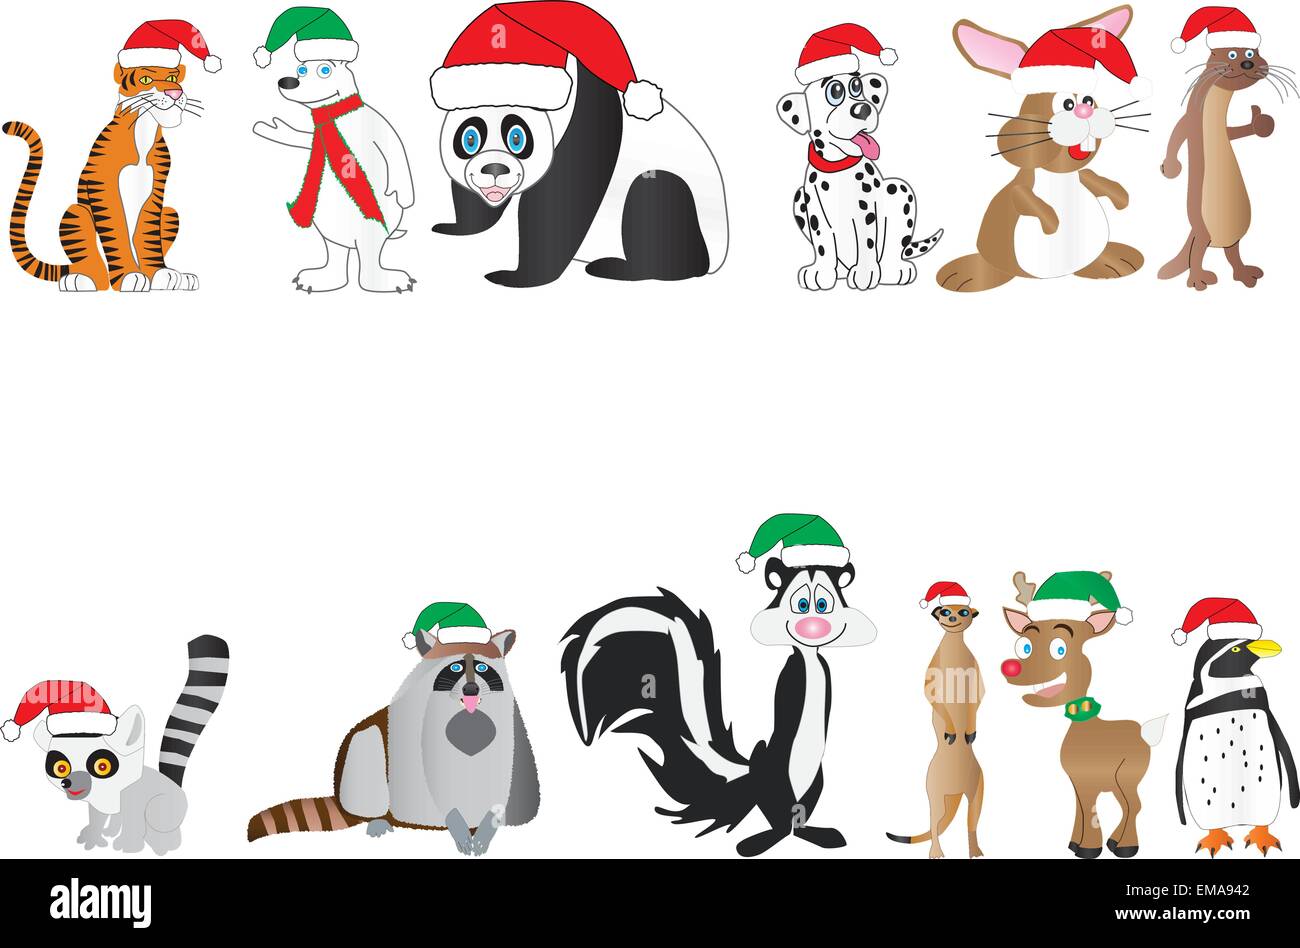 Un vecteur Illustration d'une collection de cute cartoon animaux dans les chapeaux de Noël ours panda tigre chiot dalmatien lapin lémurien otter et plus Illustration de Vecteur